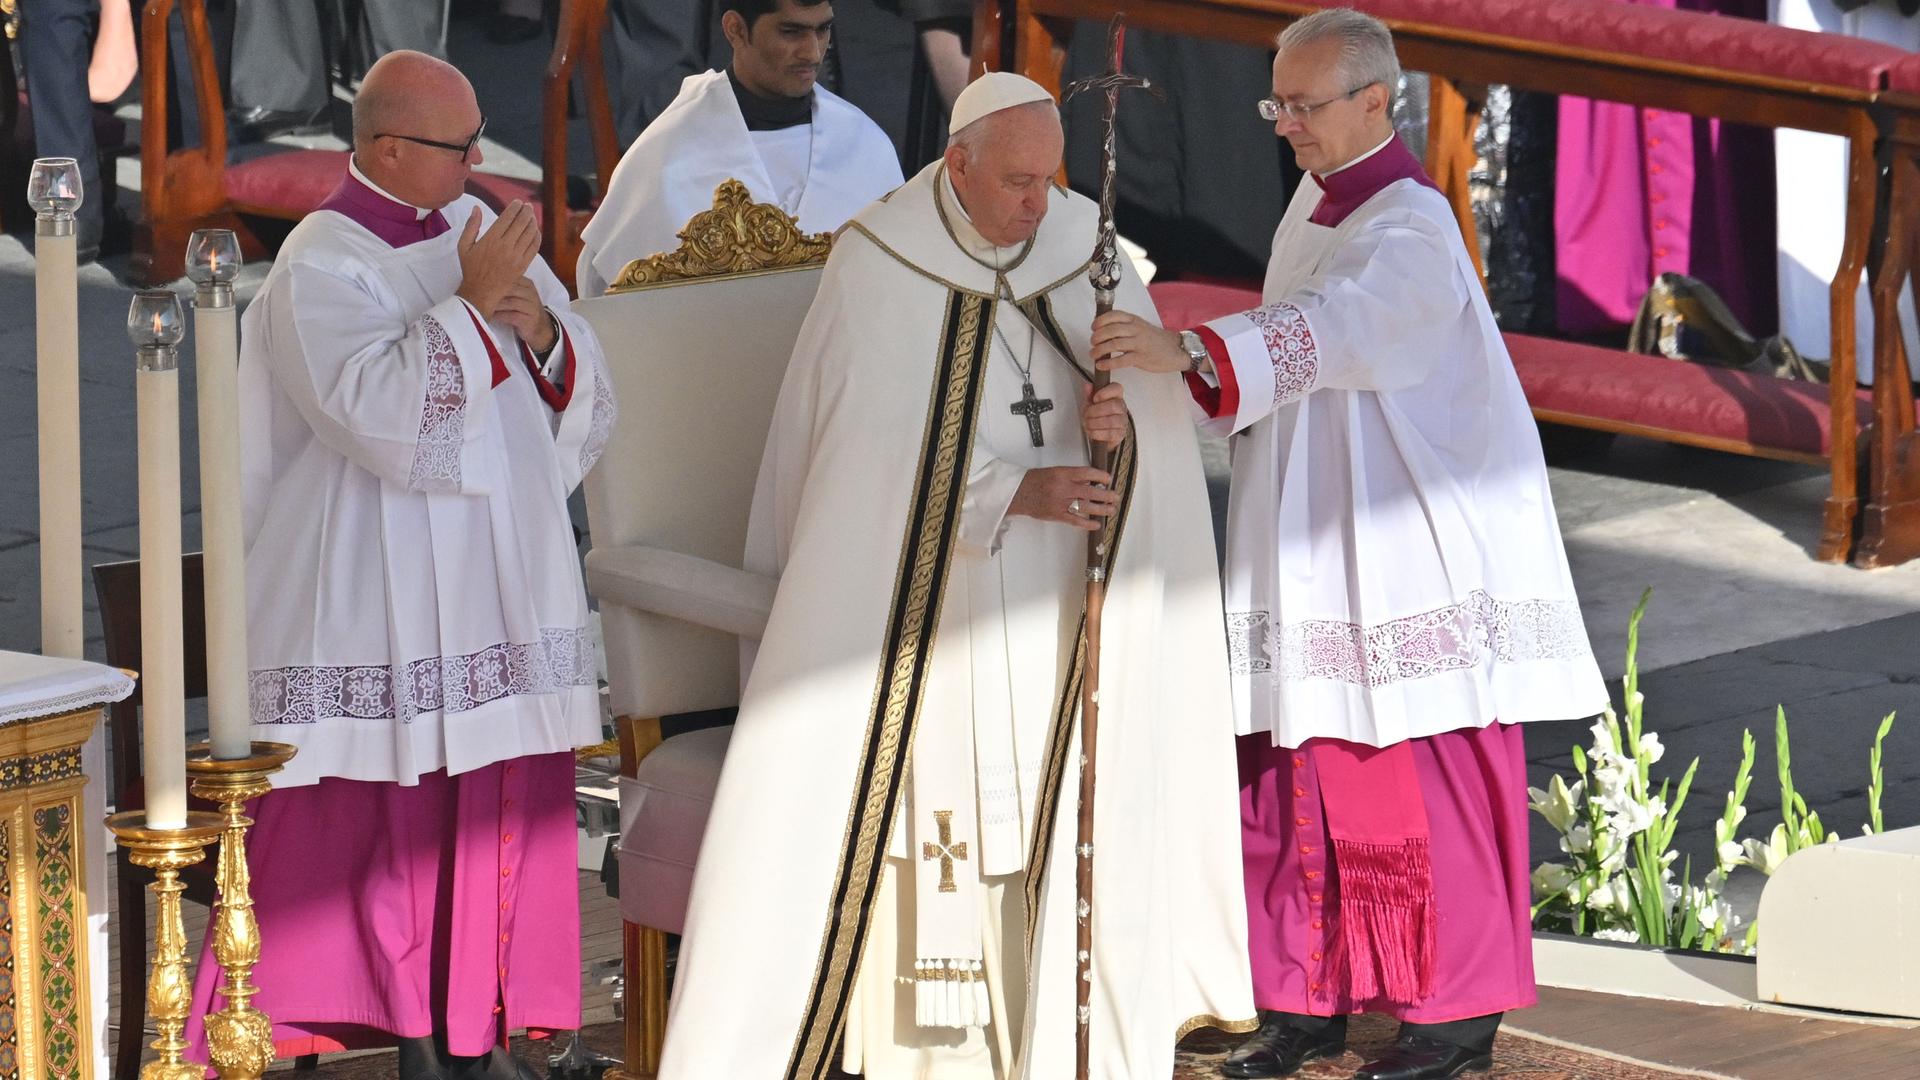 Papst Franziskus leitet die Messe der Weltsynode in Rom. Er steht mit einem großen Kreuz auf der Bühne.